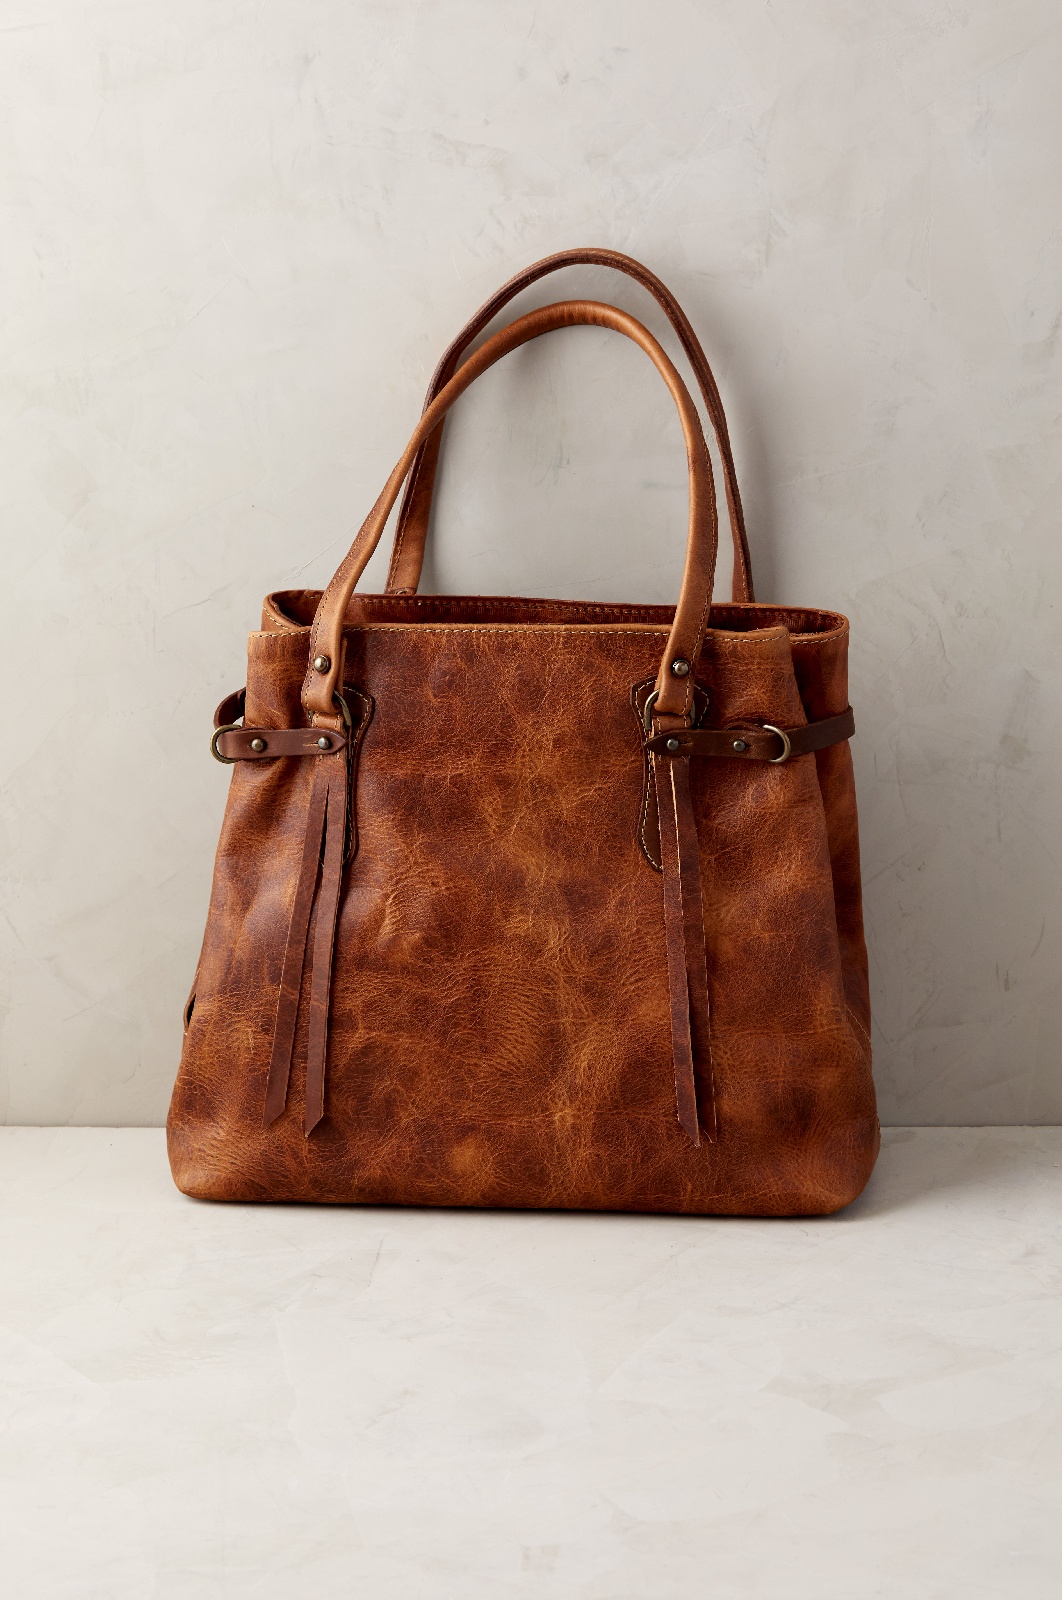 Santa Fe Bison Leather Tote Bag with Concealed Carry Pocket | Overland